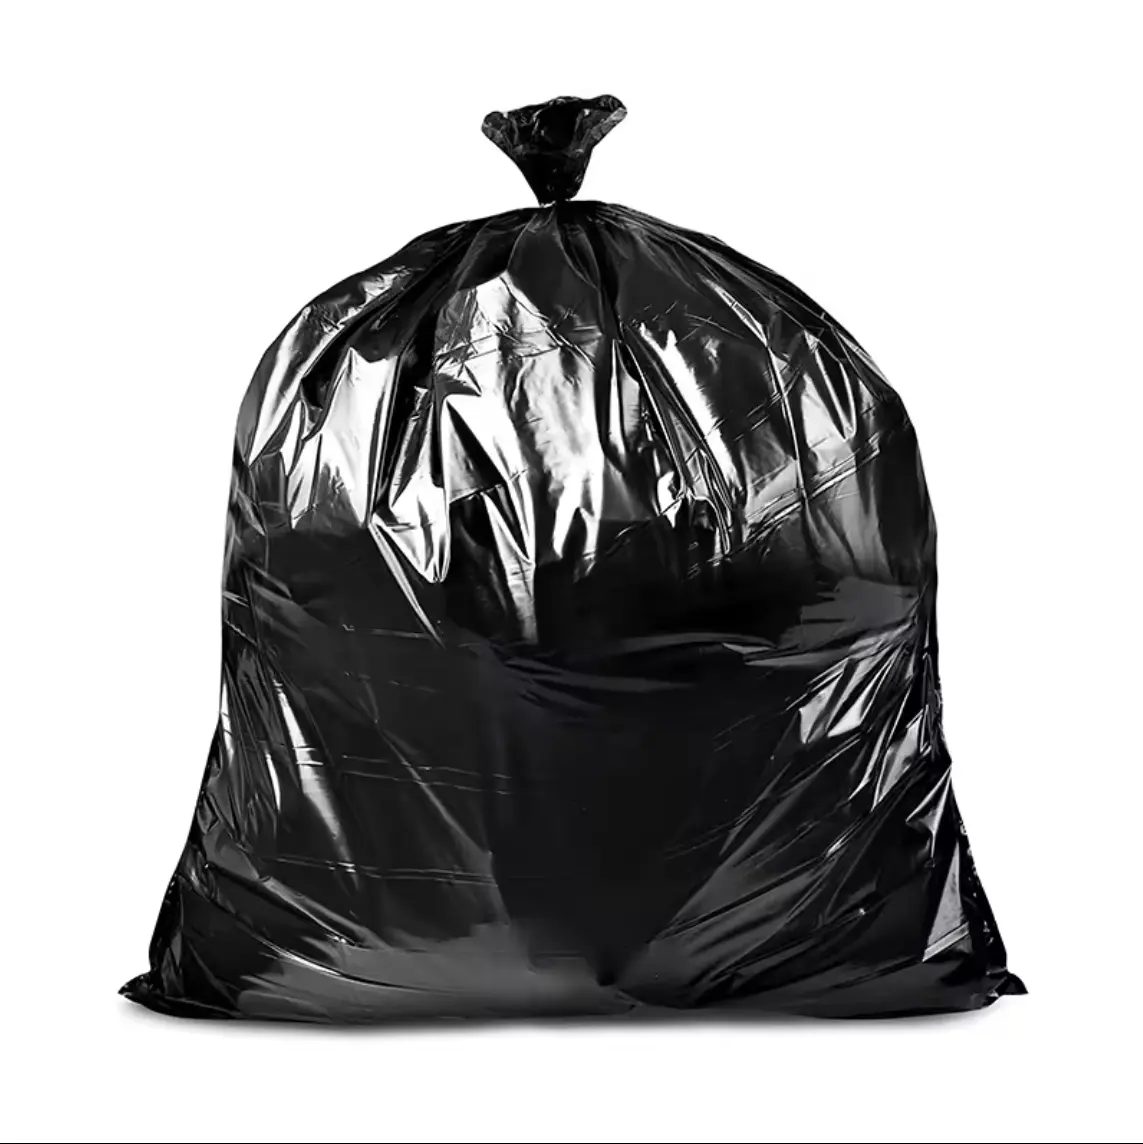 Sacos de lixo descartáveis de plástico para uso hospitalar, sacos de lixo grandes pretos de 240l, sacos de lixo amarelos, bolsos planos